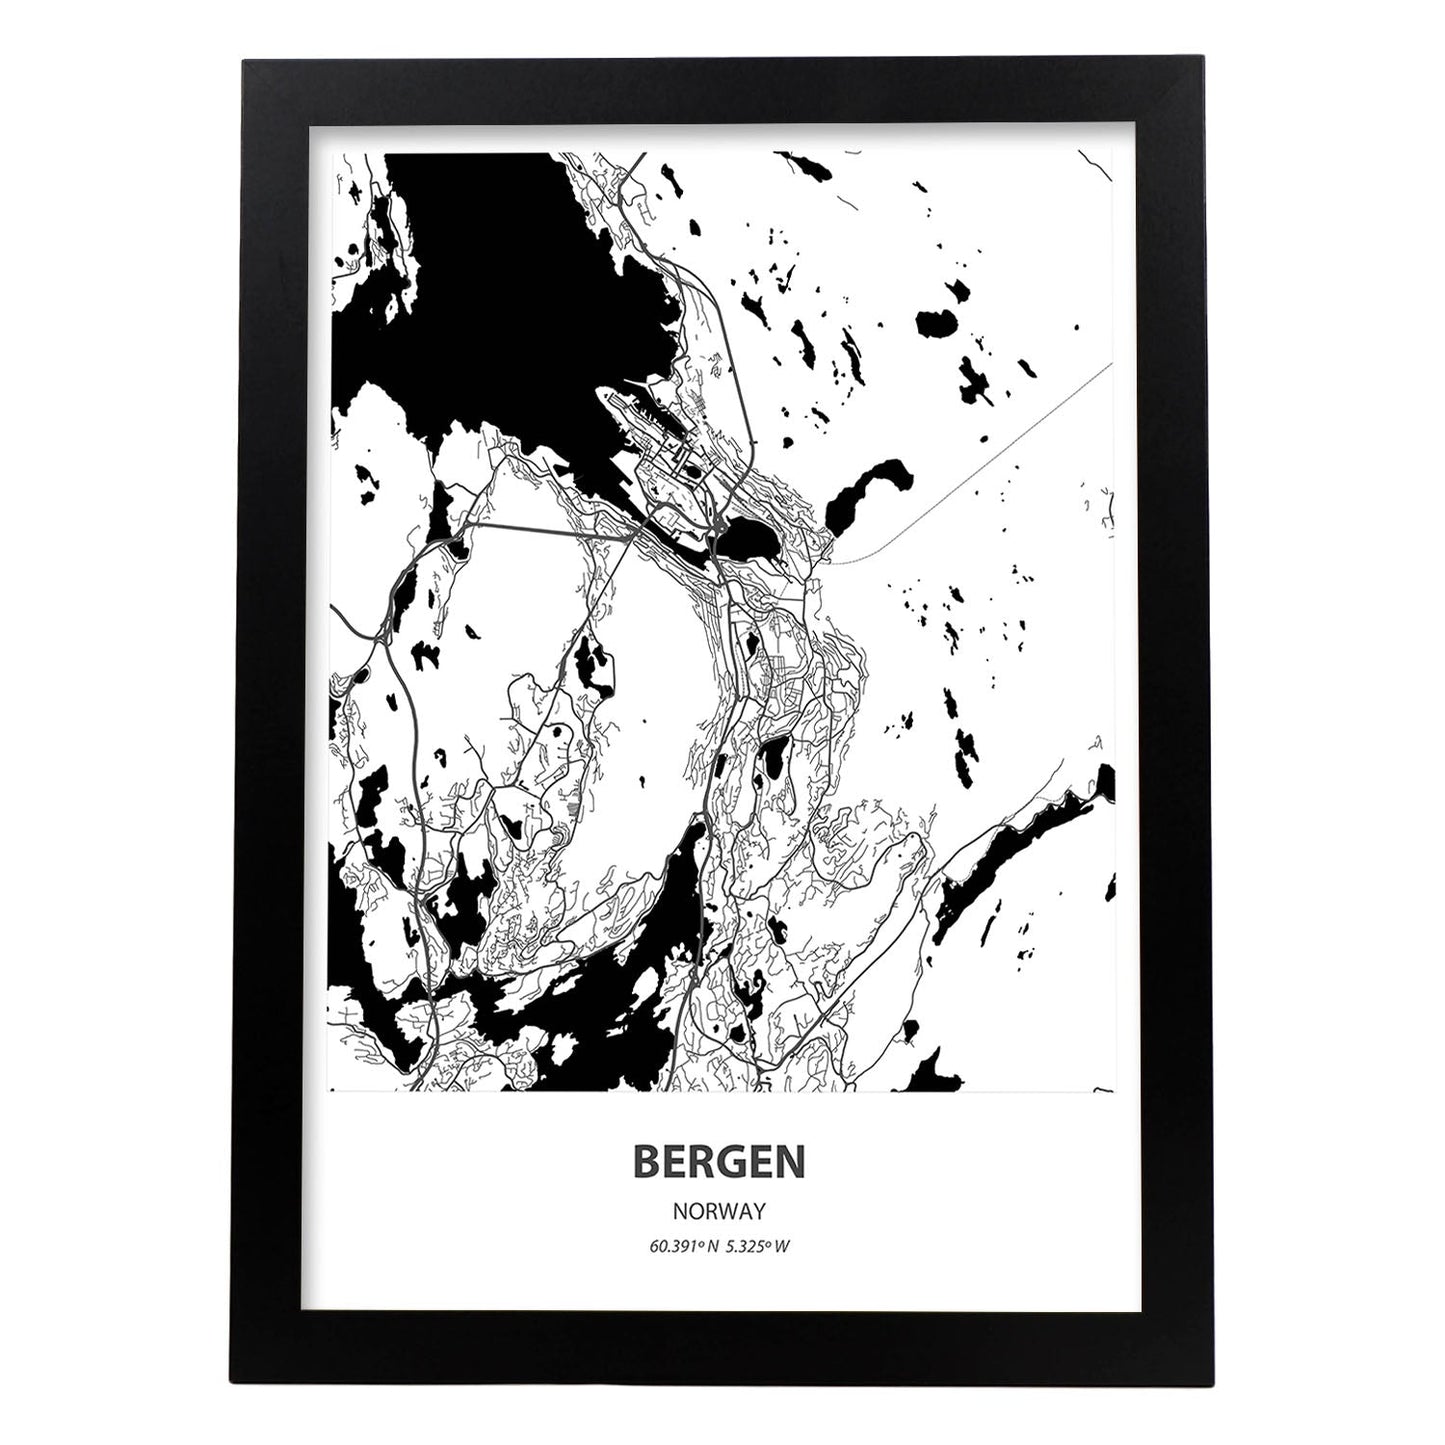 Poster con mapa de Bergen - Noruega. Láminas de ciudades del norte de Europa con mares y ríos en color negro.-Artwork-Nacnic-A3-Marco Negro-Nacnic Estudio SL